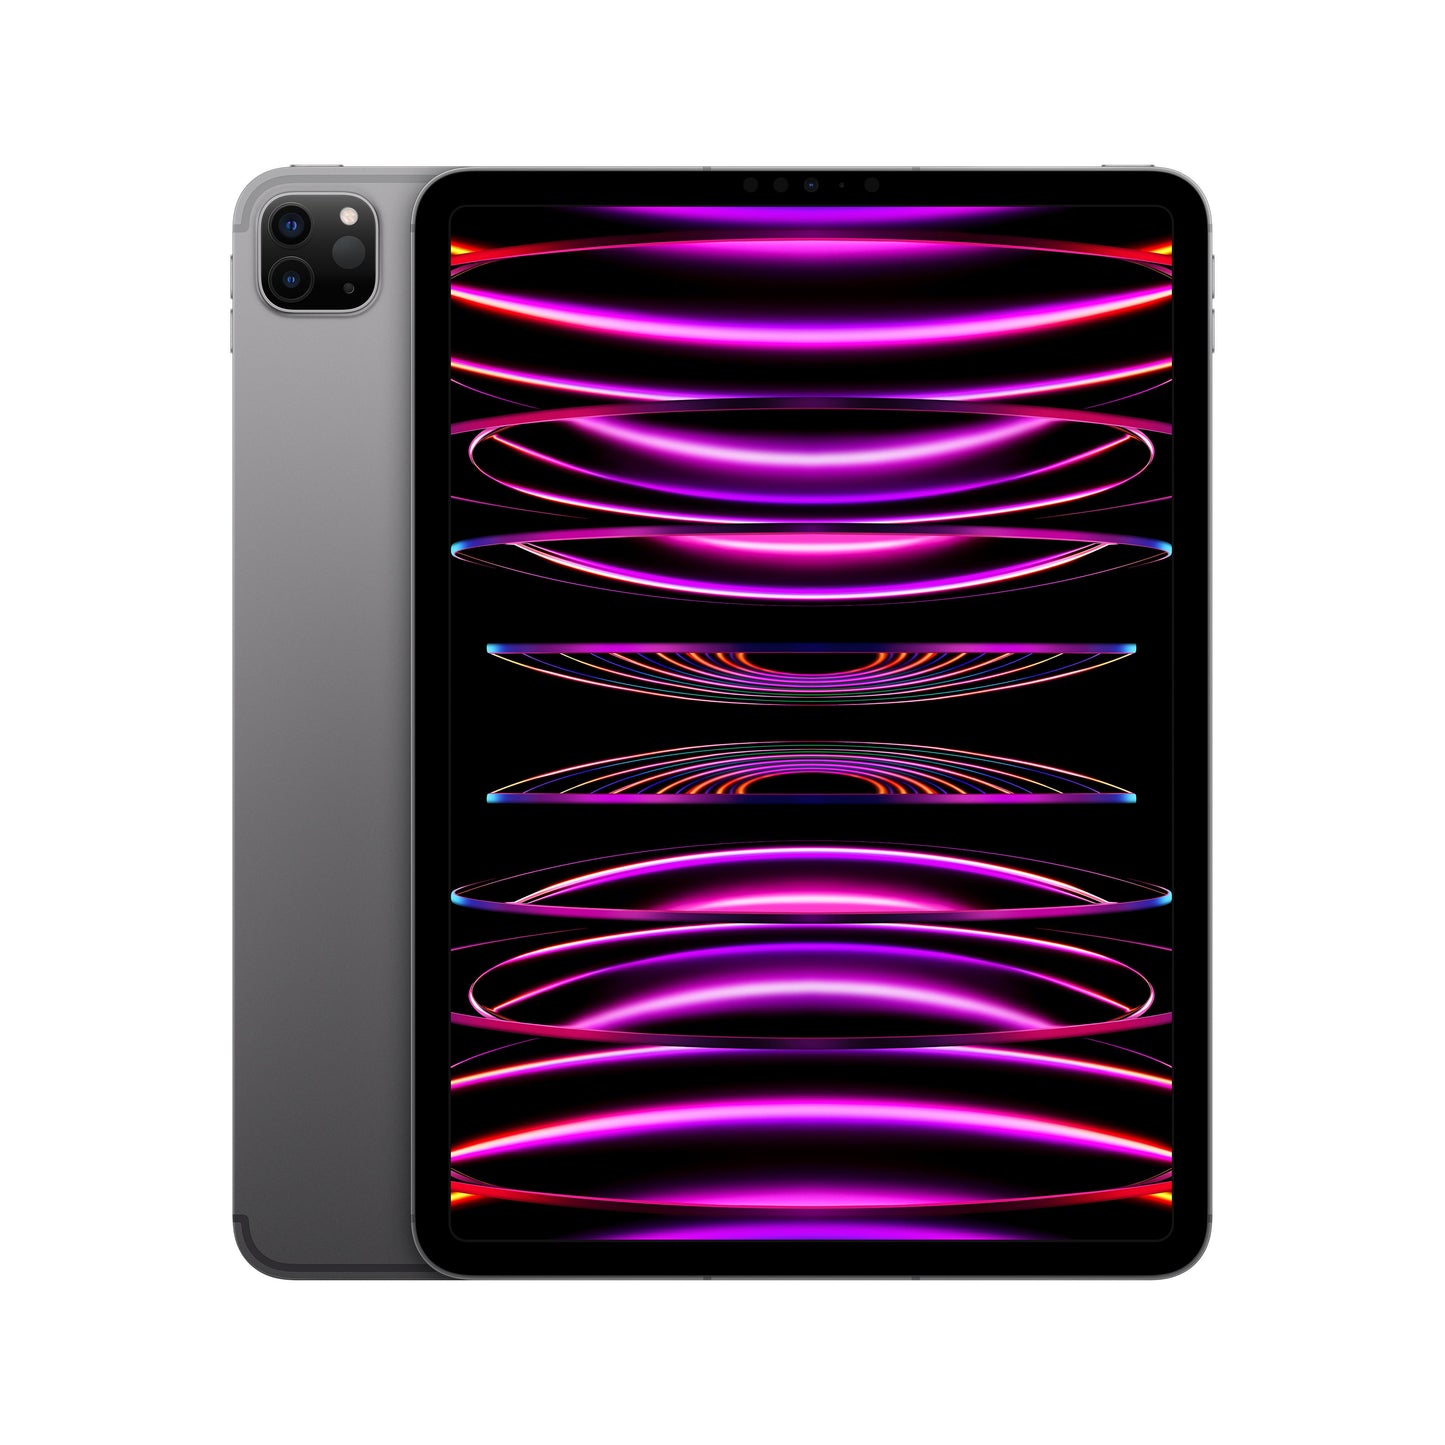 2022 11-inch iPad Pro Wi-Fi + Cellular 128GB - Space Grey (4th generation)